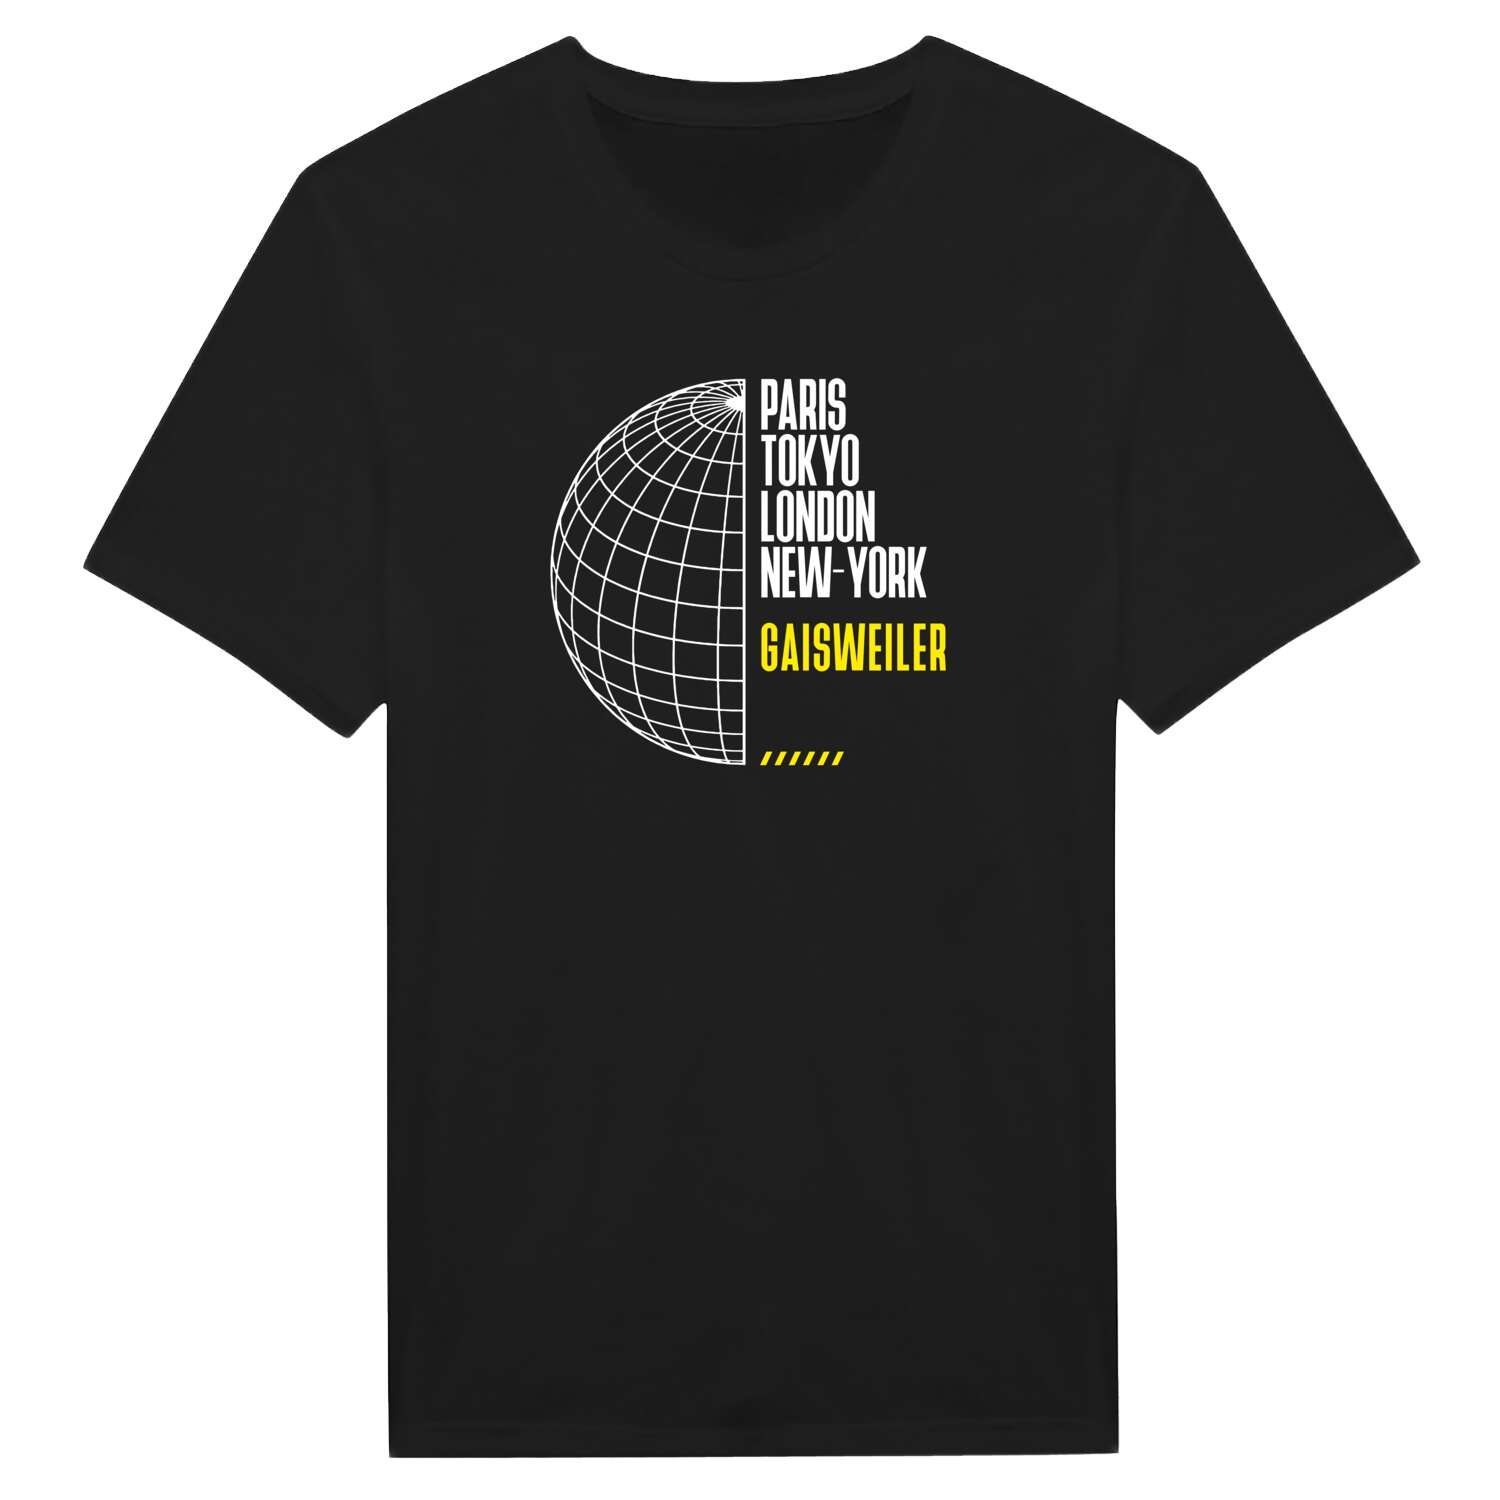 Gaisweiler T-Shirt »Paris Tokyo London«